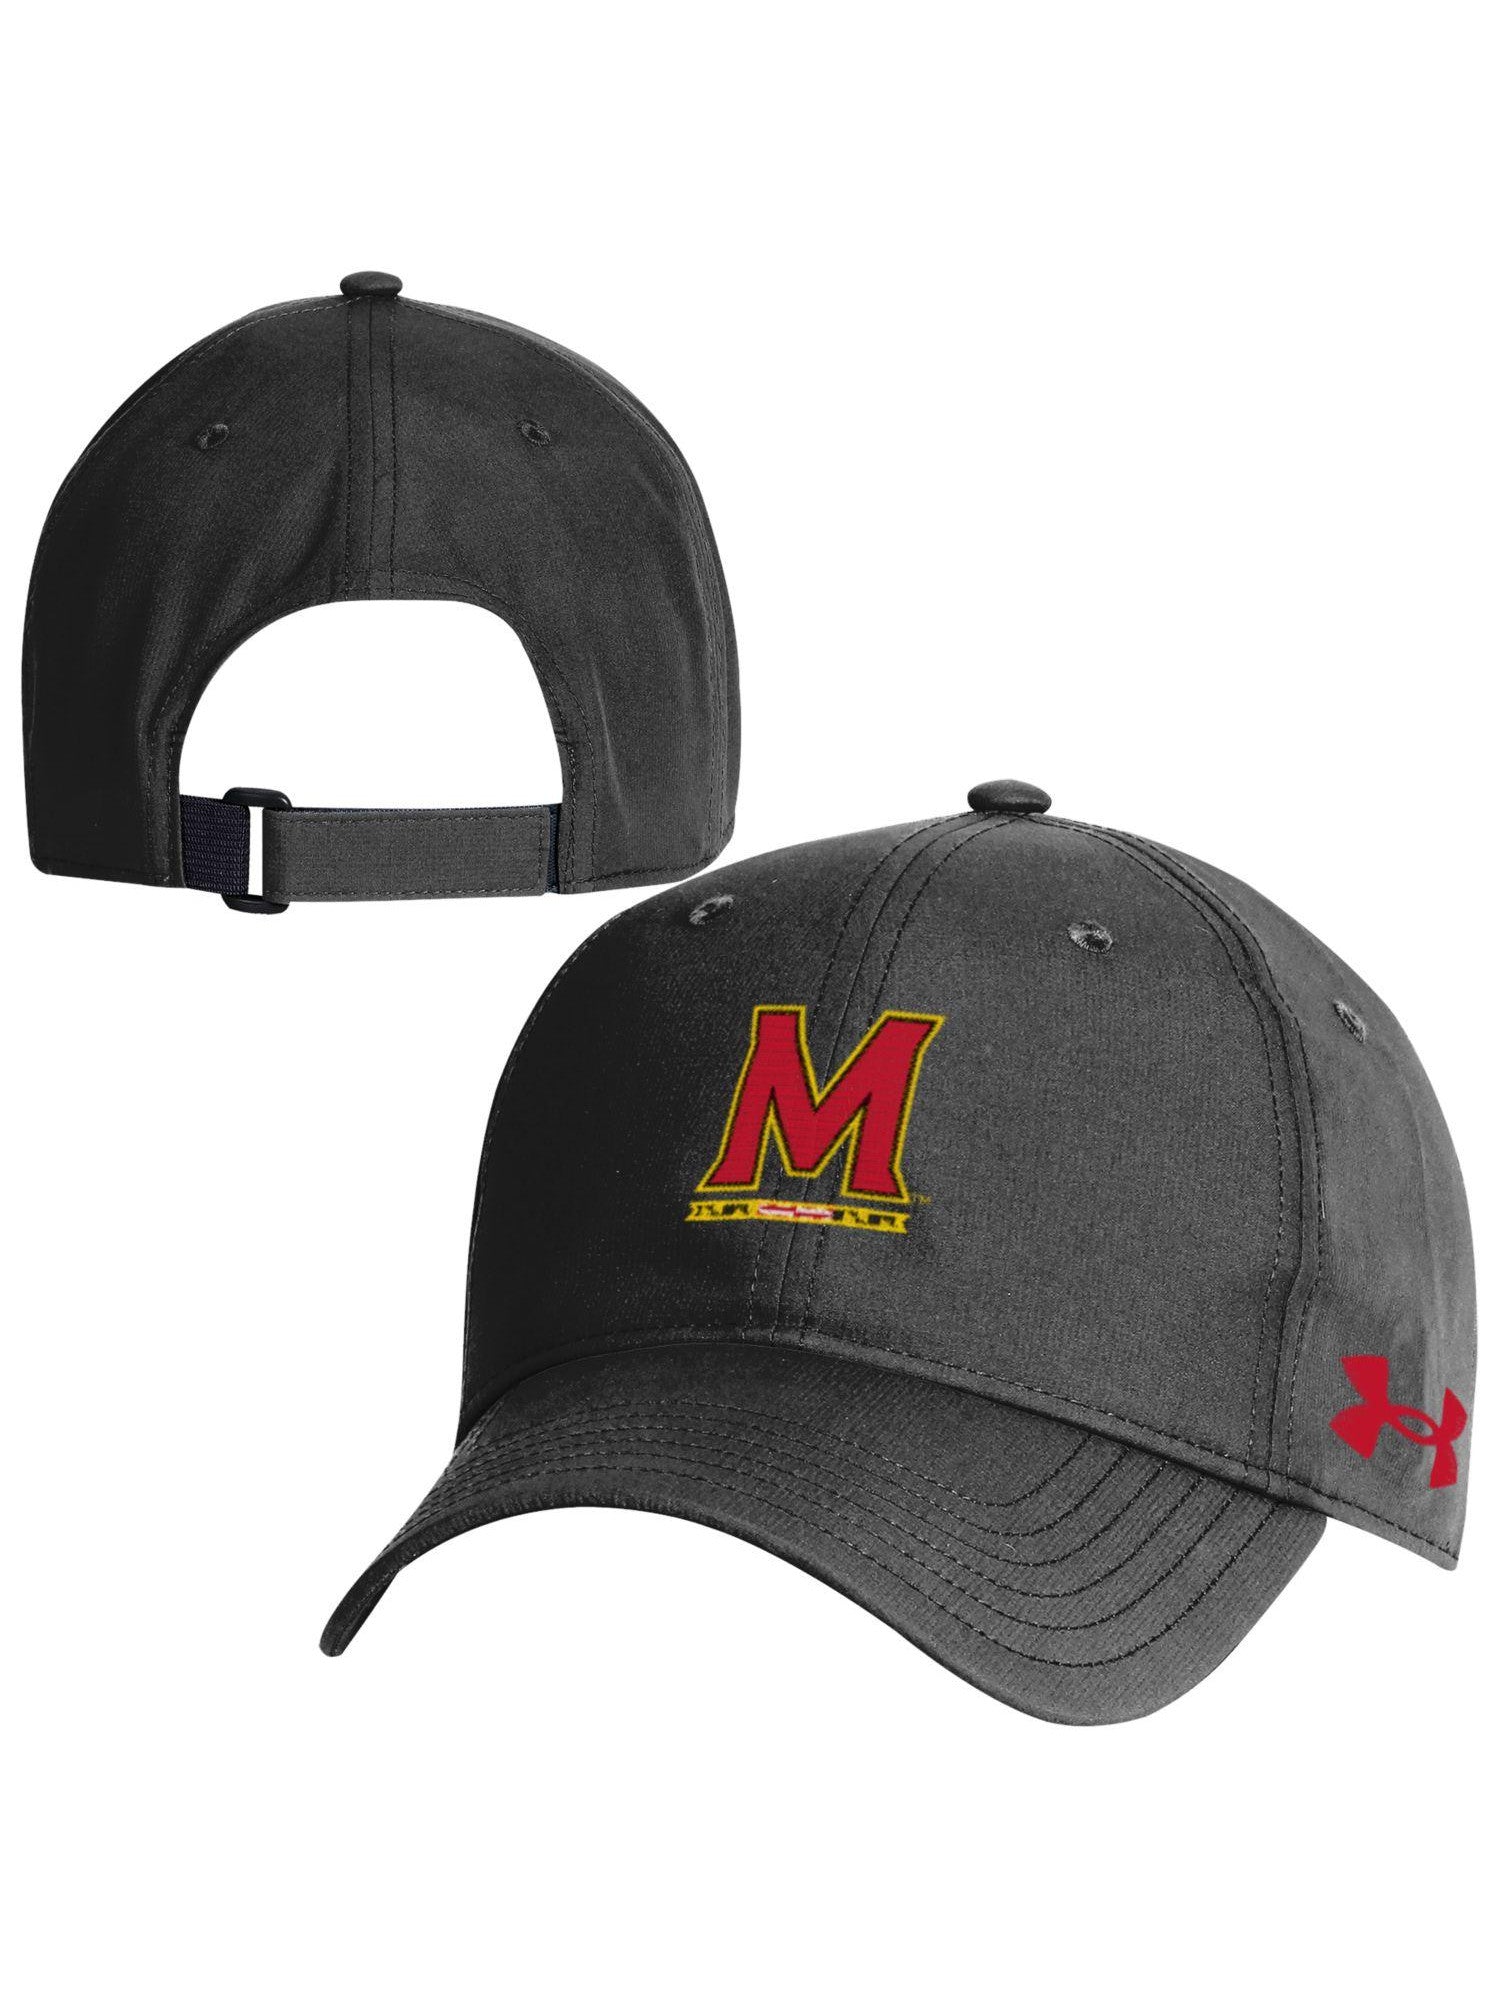 Under Armor University of Maryland Baseball Cap (Black) – Maryland Gifts